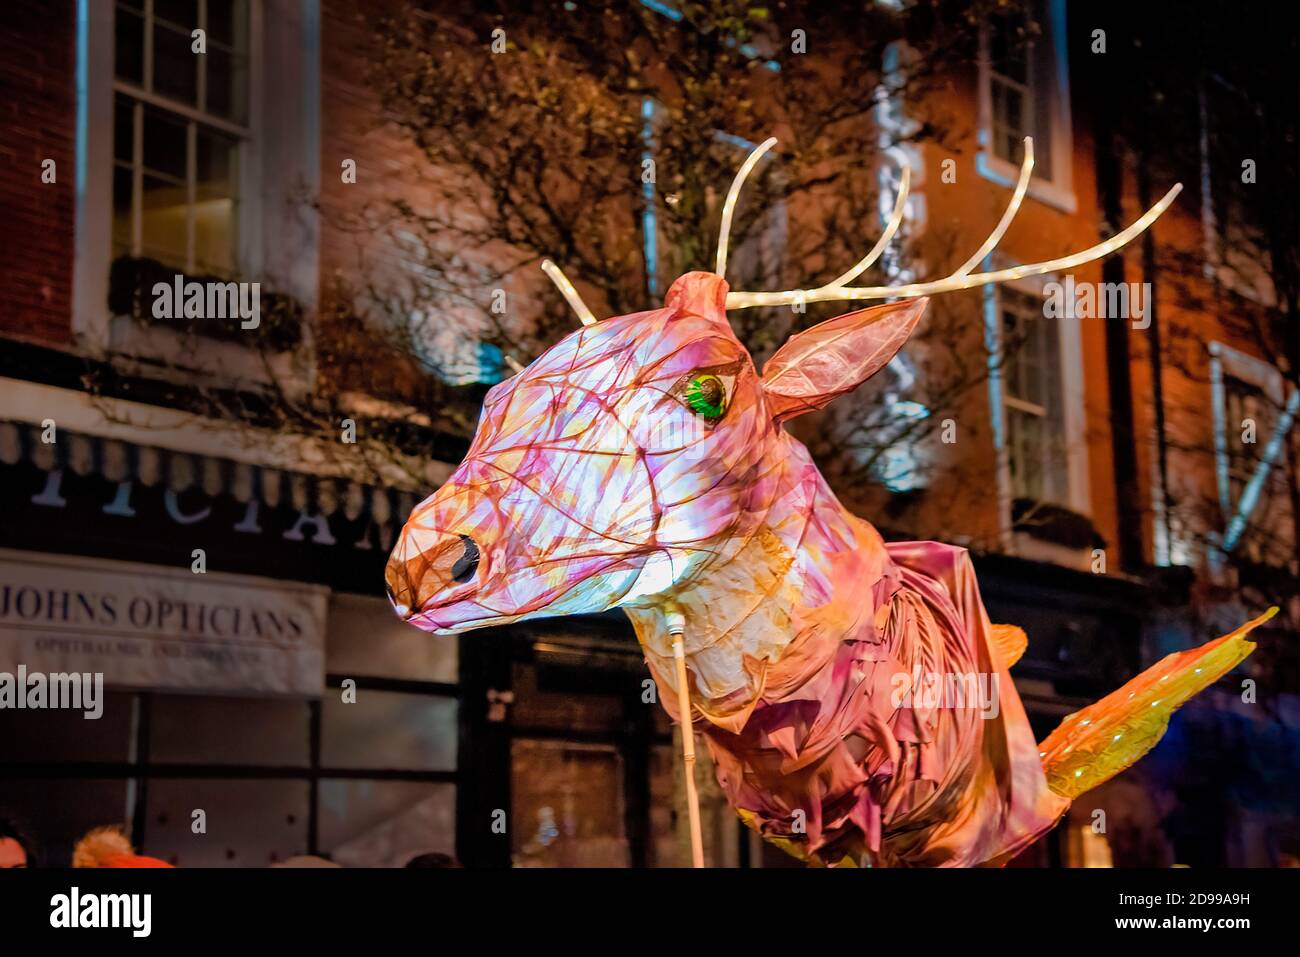 Nottigham, Reino Unido - Feb 2020: Linterna de papel, con forma de cabeza de ciervo que ilumina el desfile durante el festival anual de luces. Foto de stock